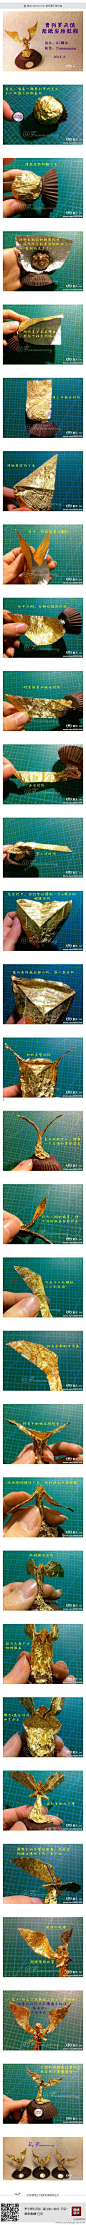 费列罗天使折纸实拍教程（情人节特供）【全文】http://t.cn/zY60mA4